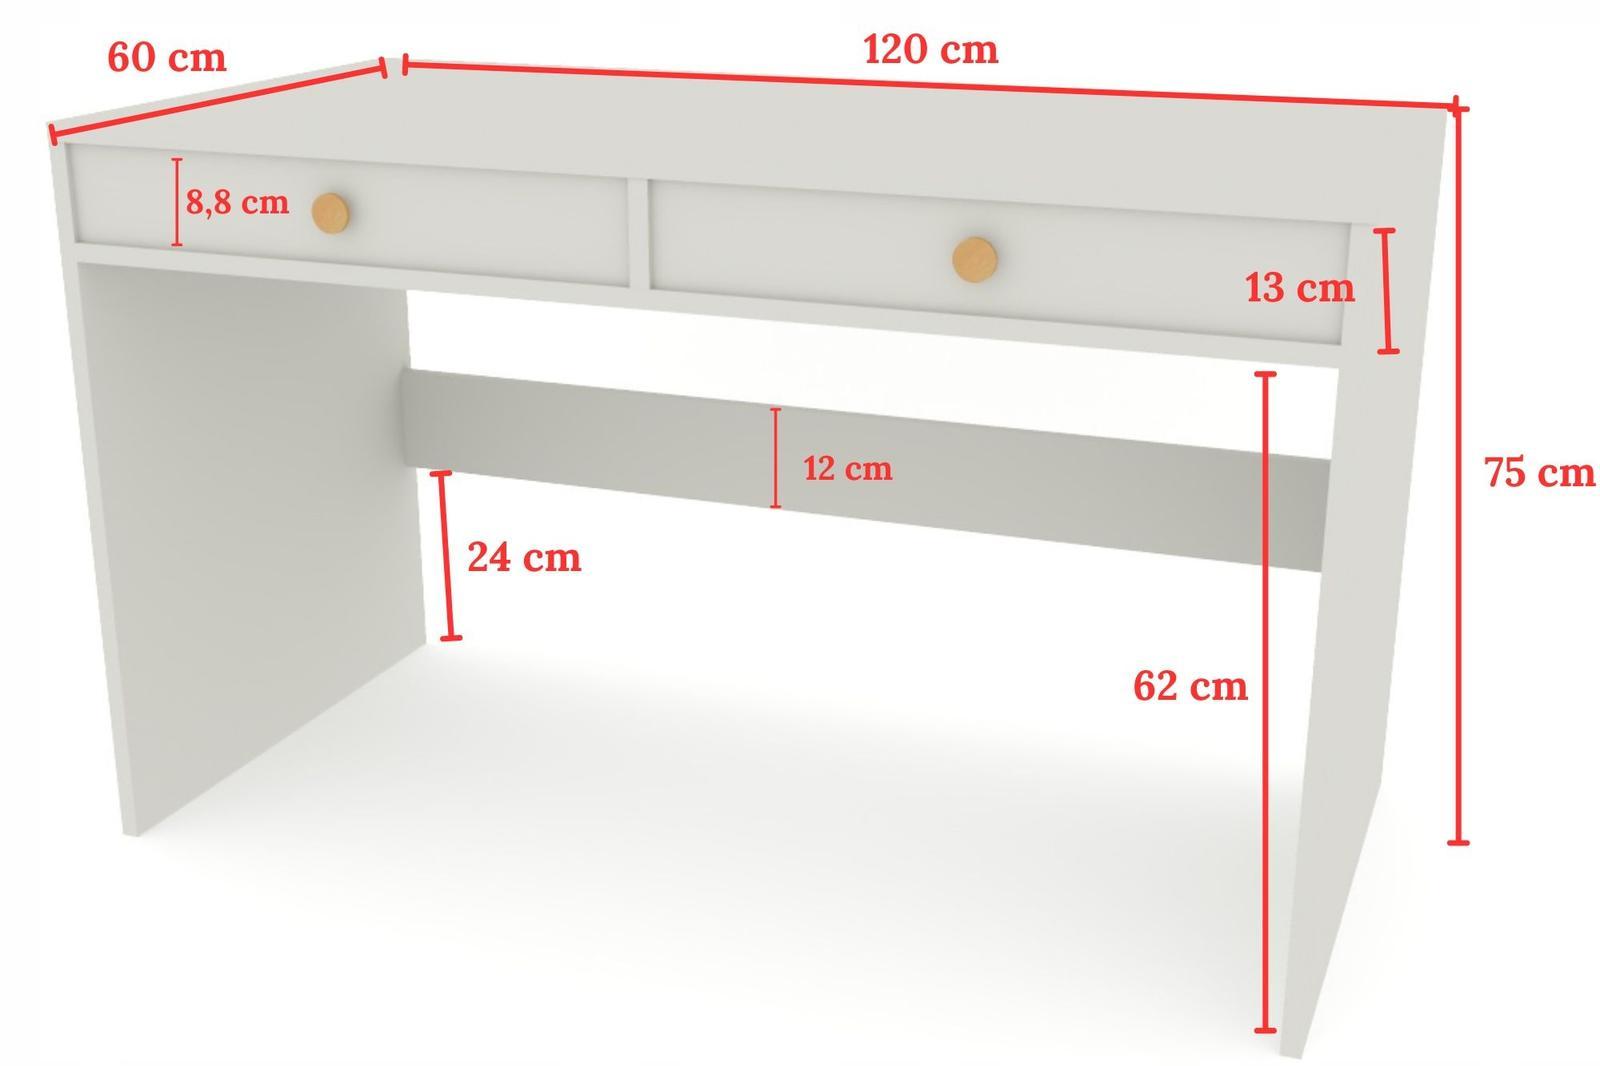 Toaletka biurko MONODIS 120x75x60 cm do sypialni szare front drewno retro nr. 5